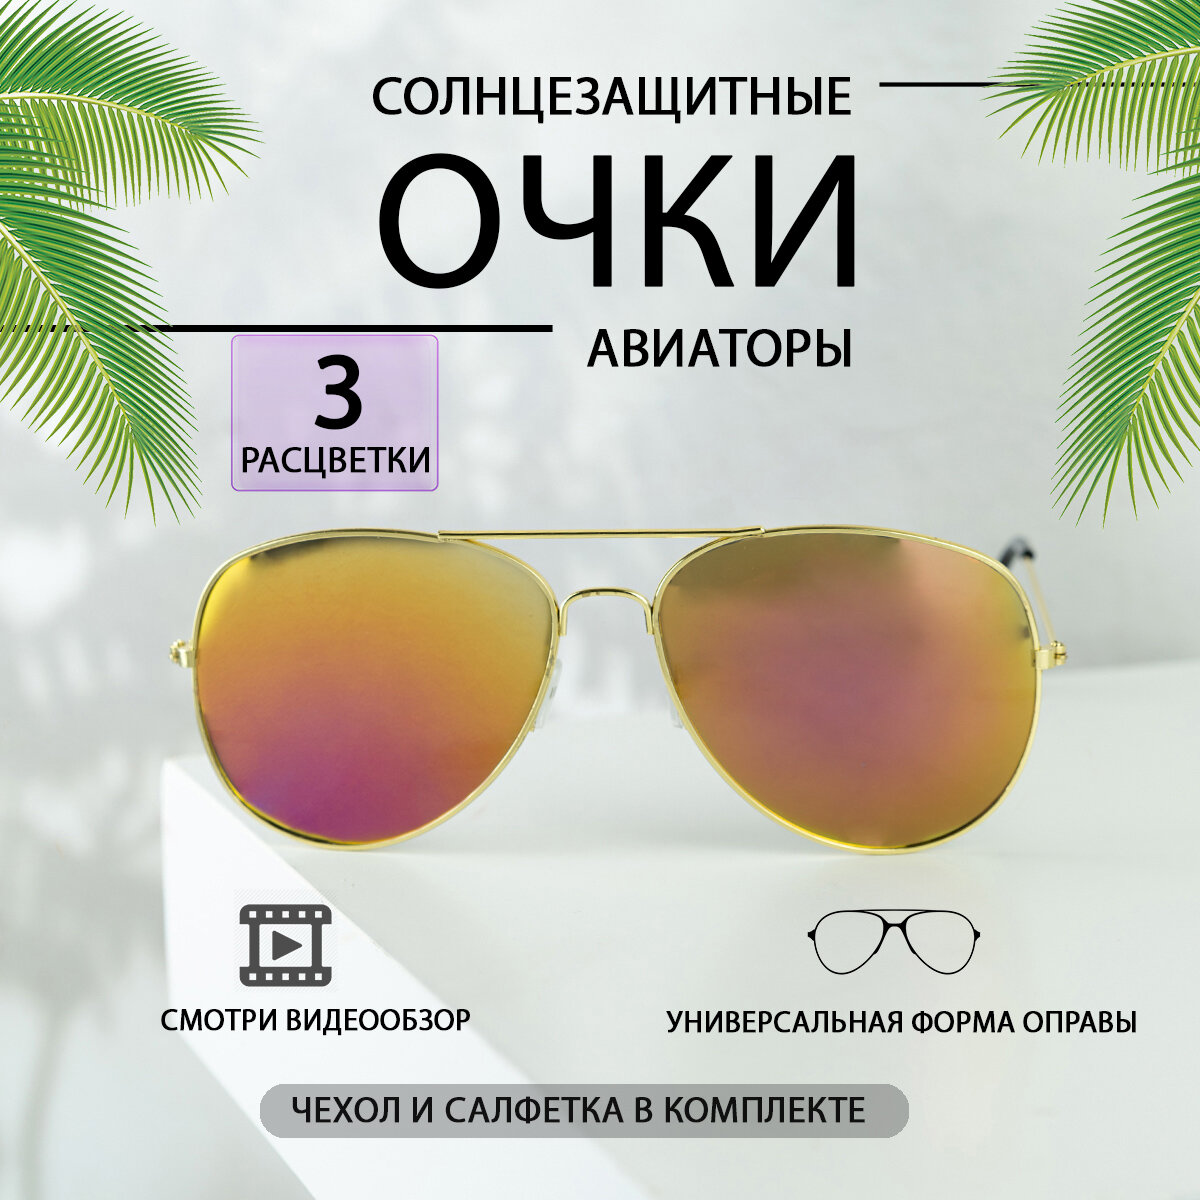 Солнцезащитные очки  Авиаторы